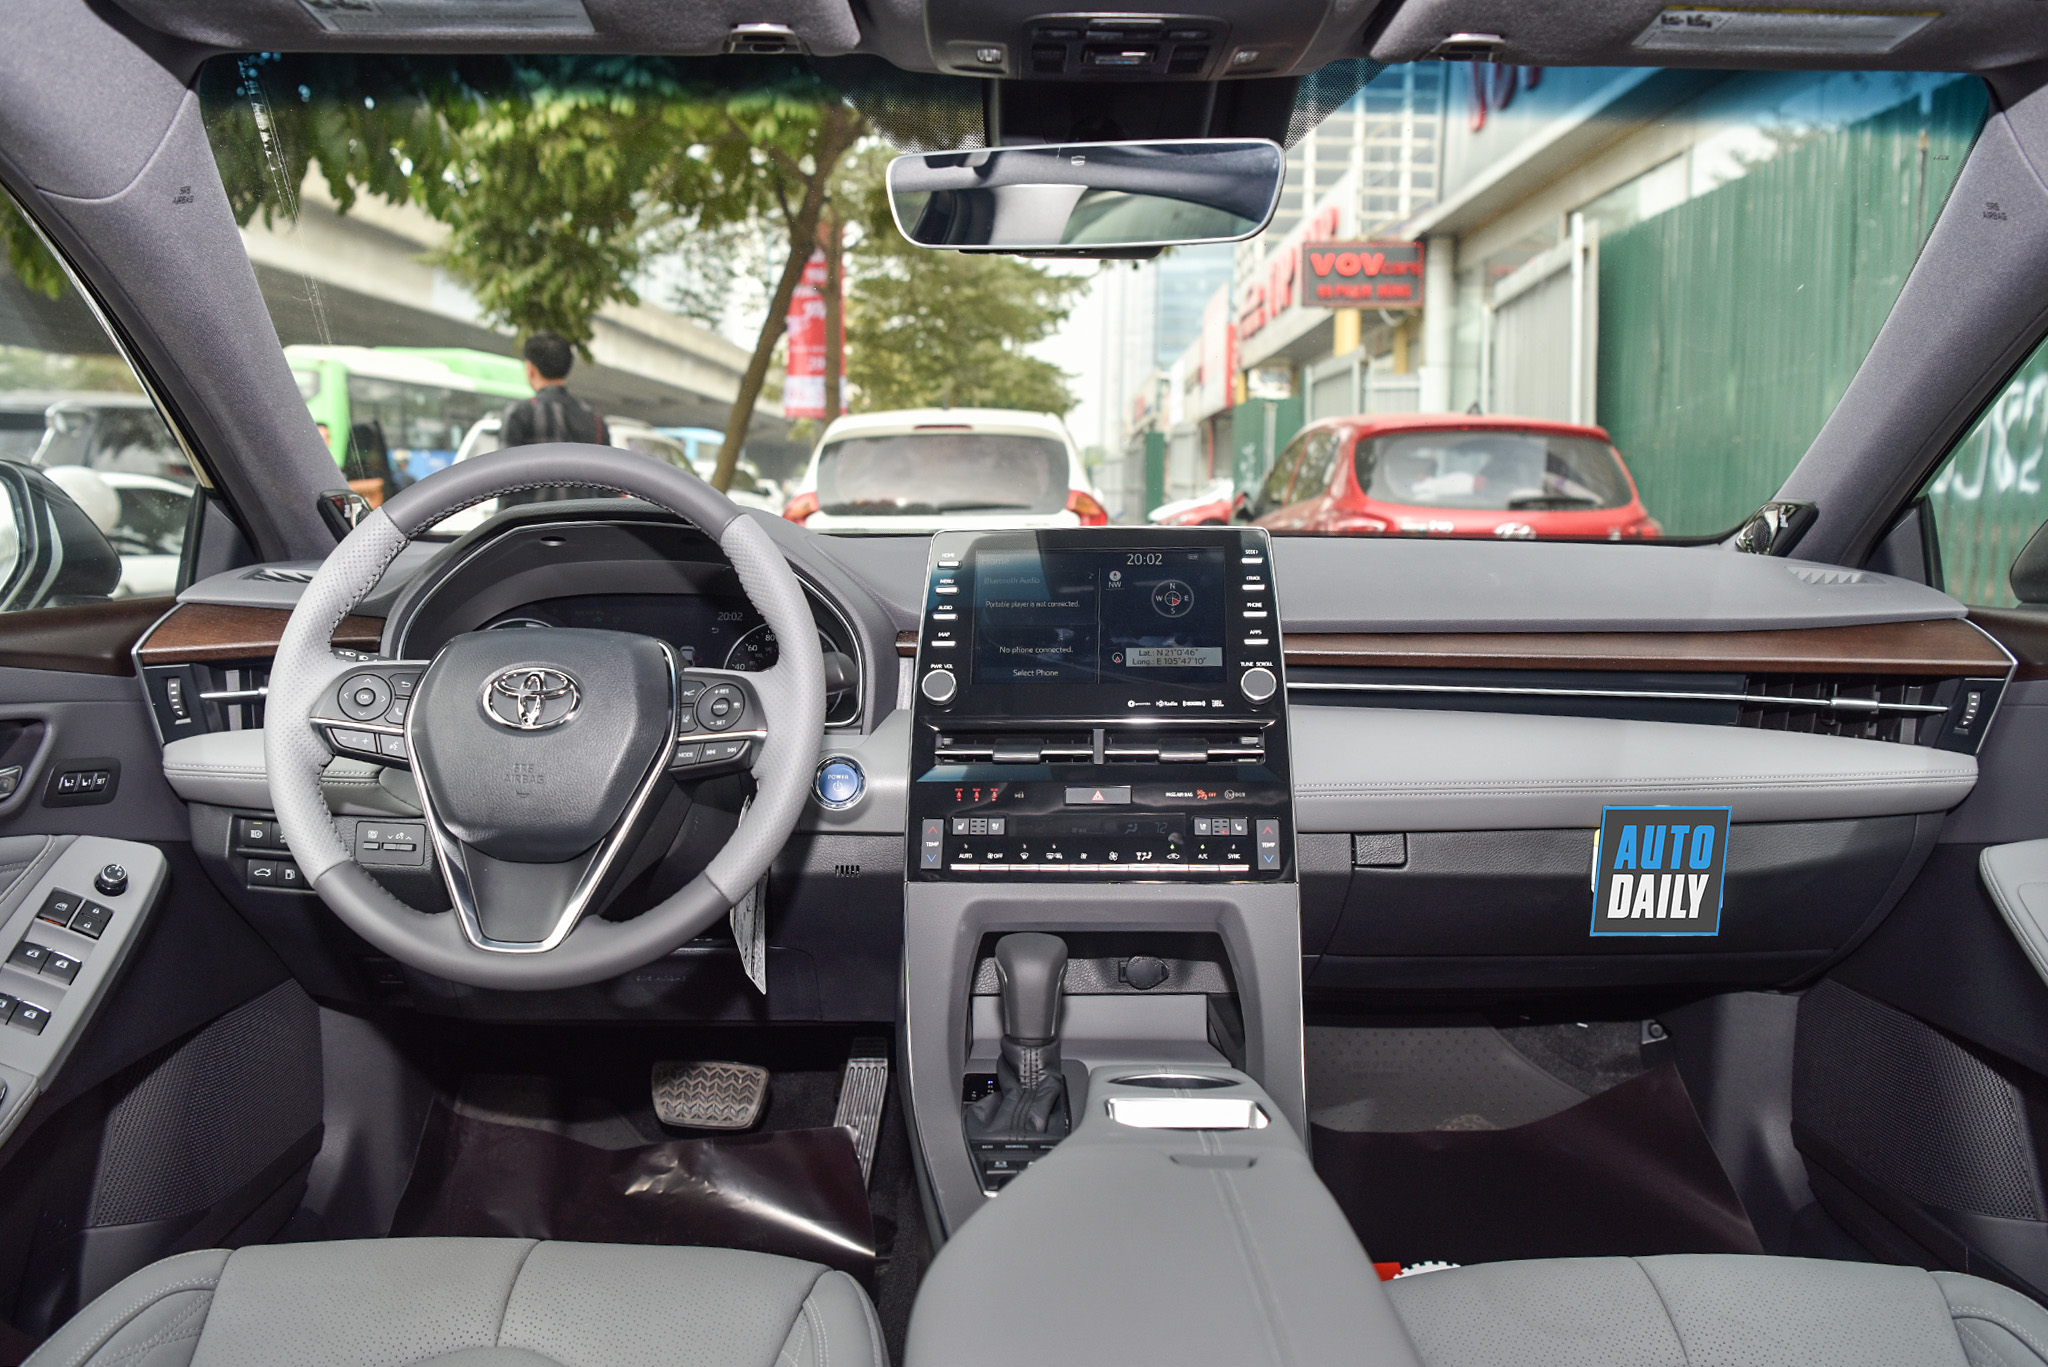 Toyota Avalon Hybrid Limited 2020 đầu tiên tại Việt Nam - 'đàn anh